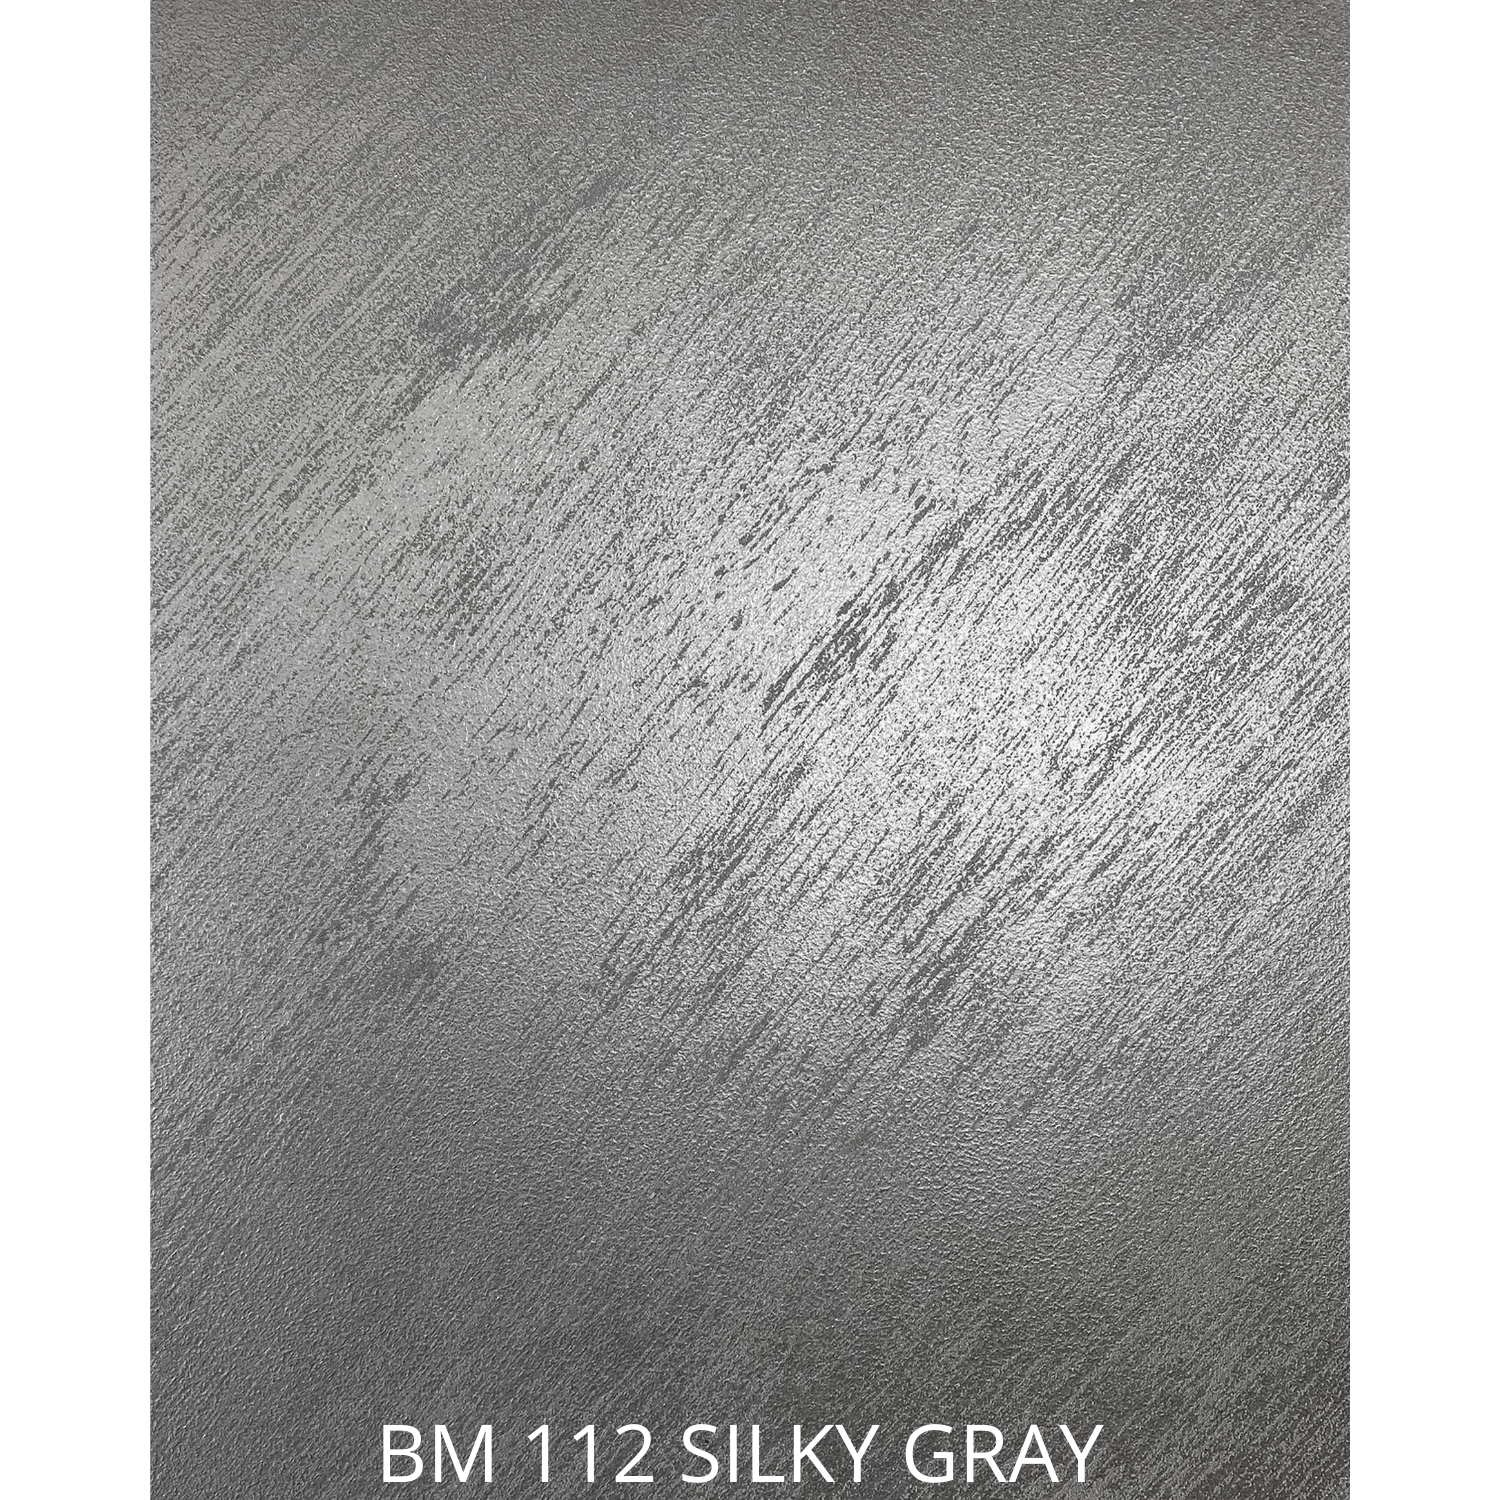 BM 112 SILKY GRAY